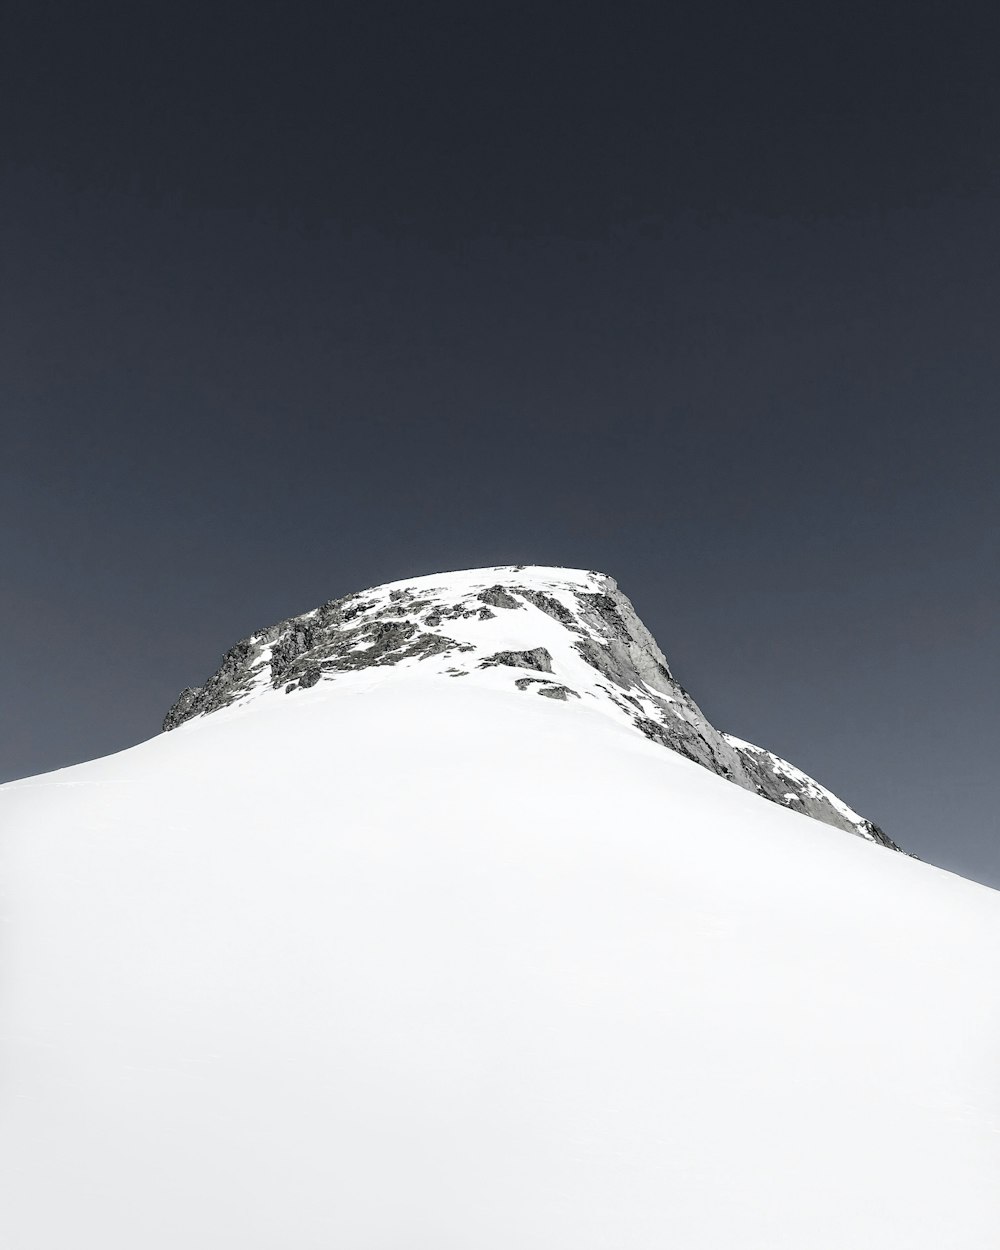 Montanha rochosa coberta por neve